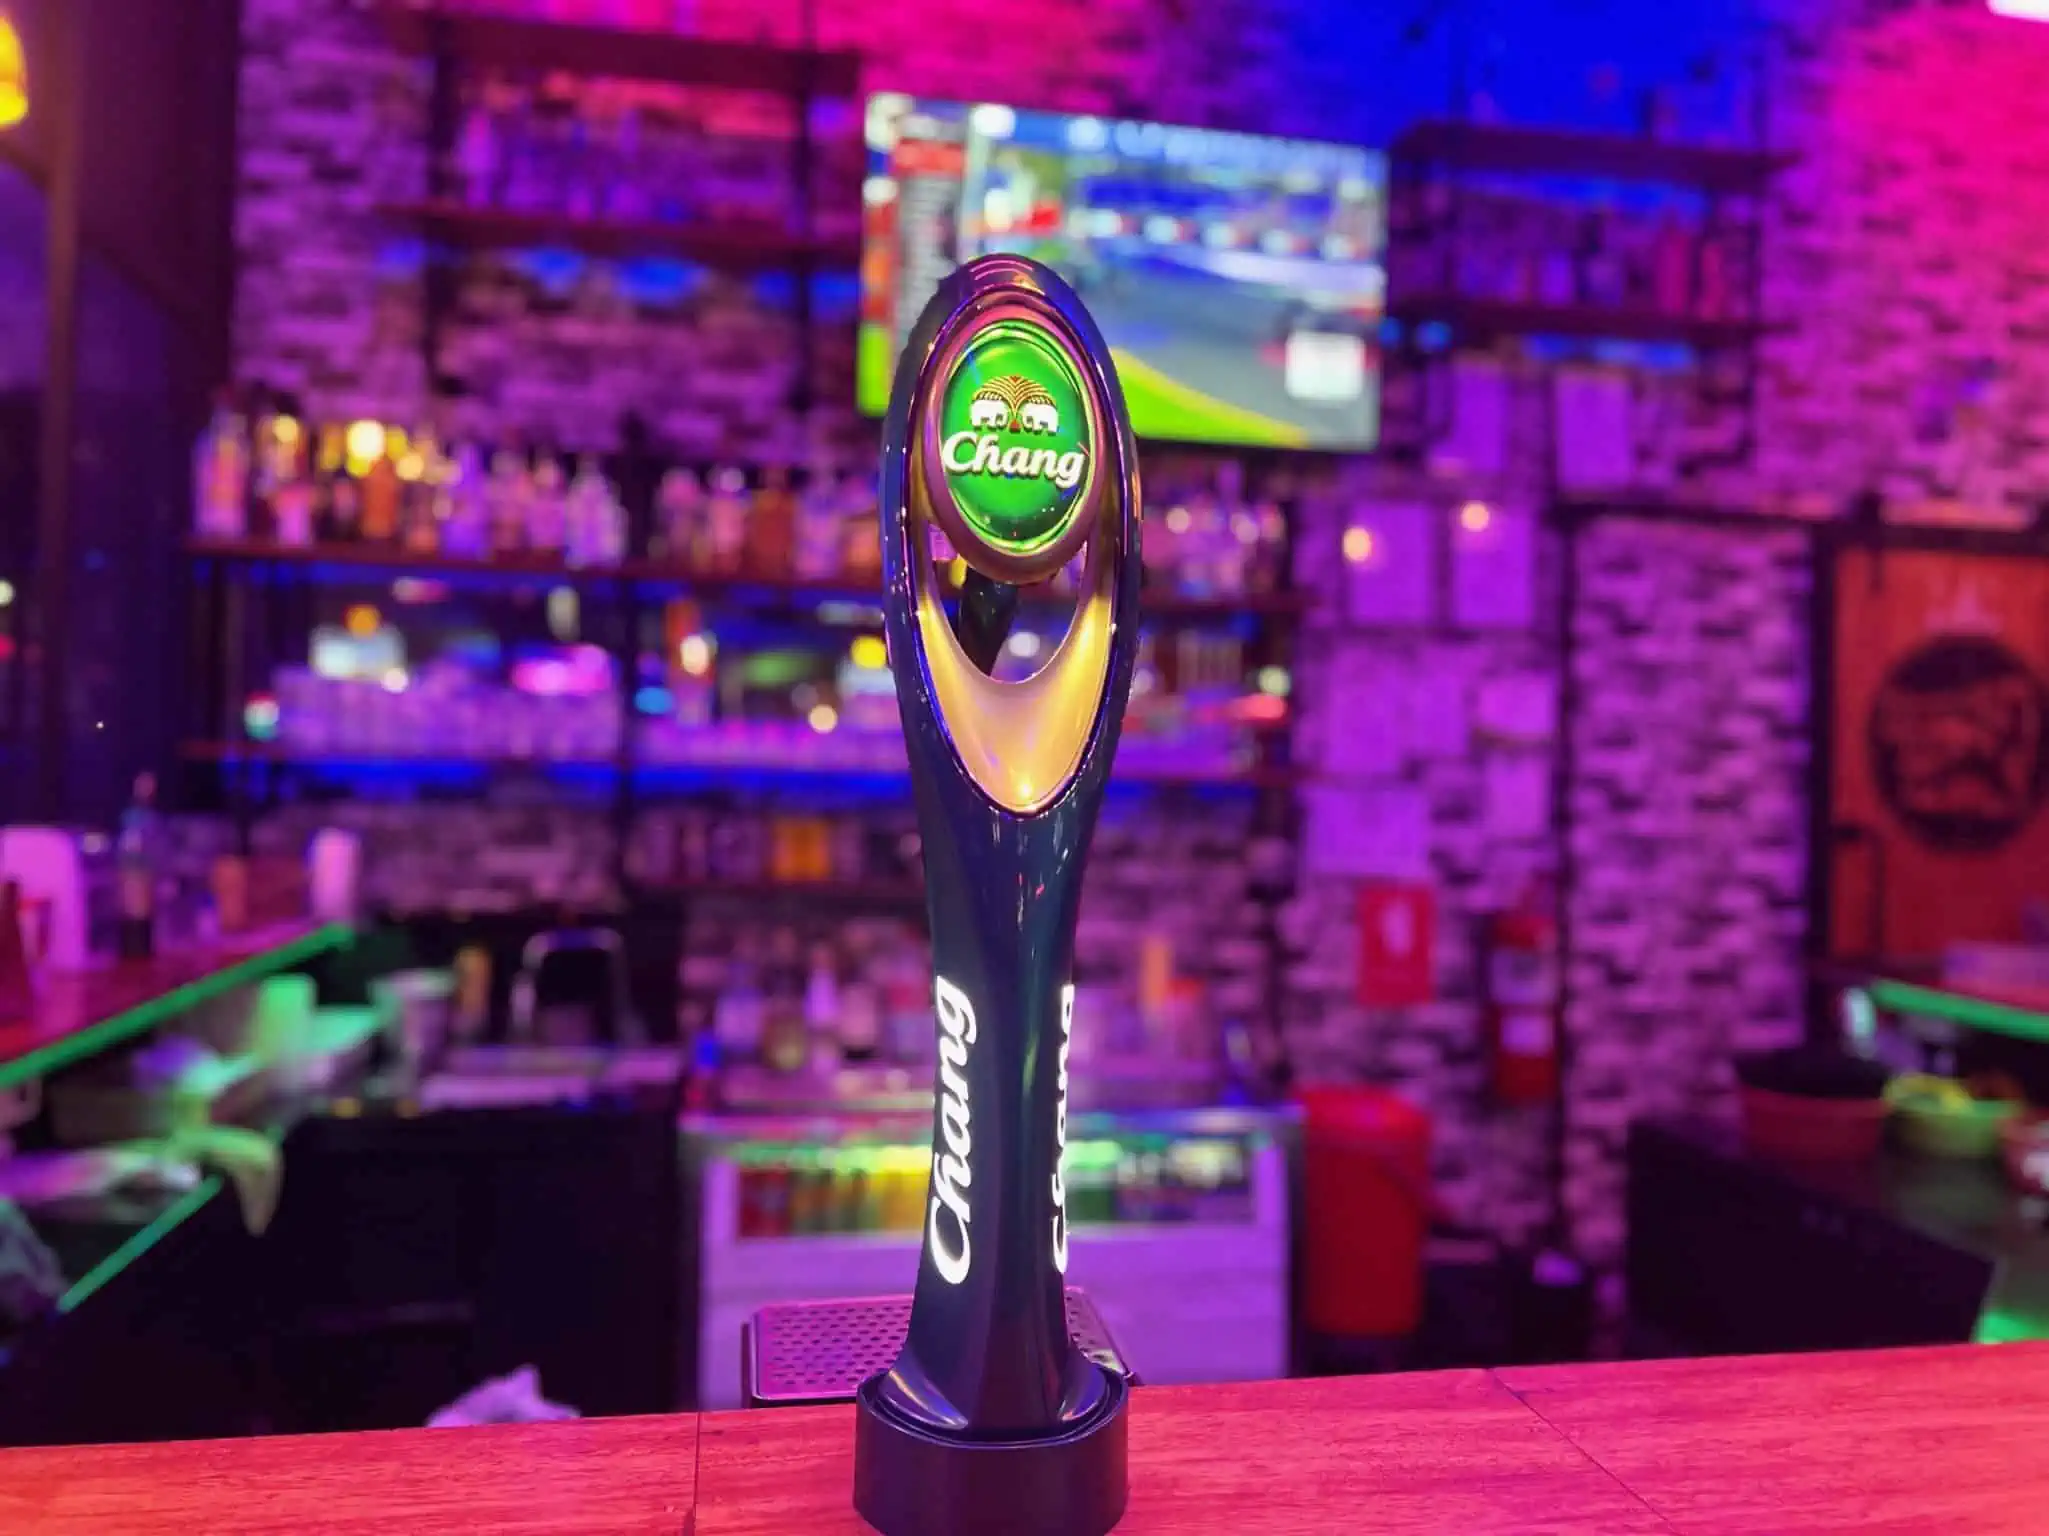 Chang beer tap handle at bar